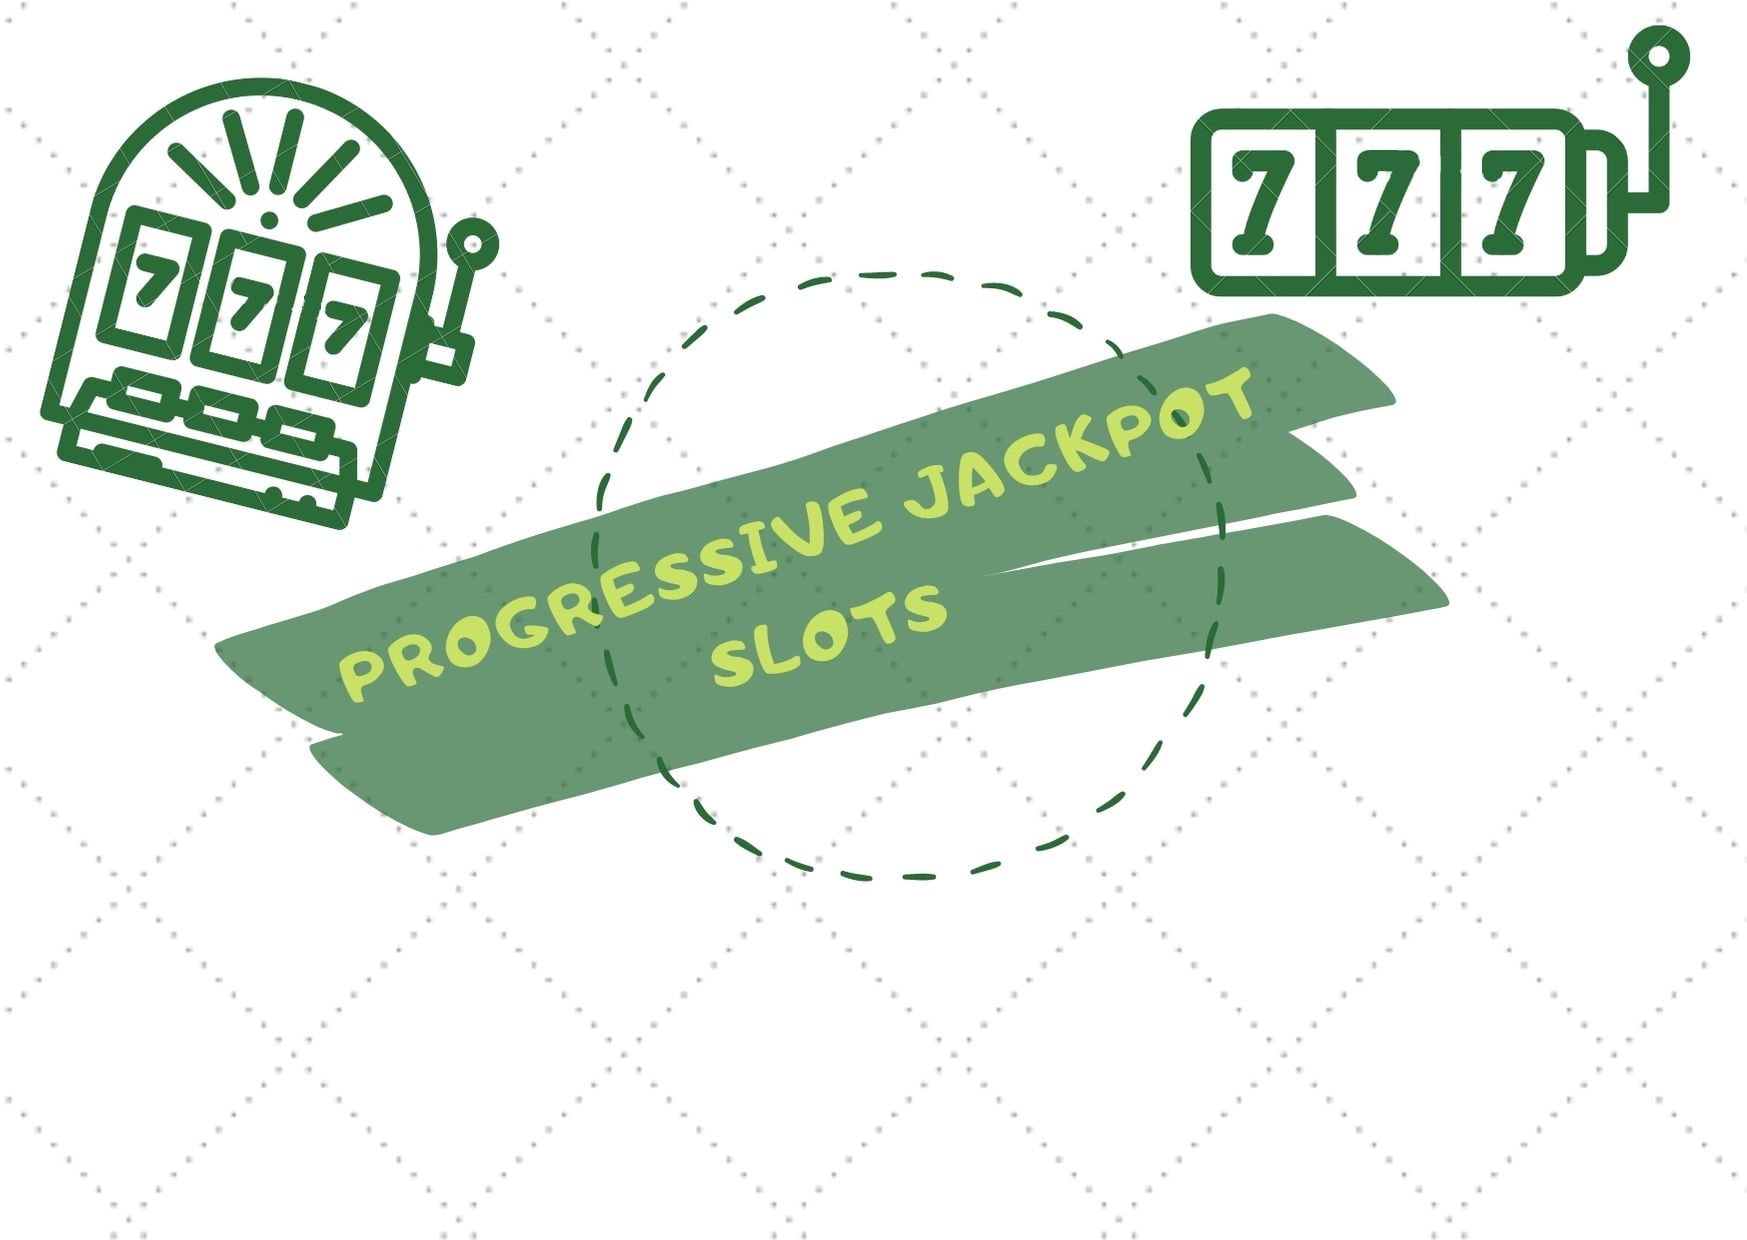 Progressive Jackpots Slot Machines in Online Casinos